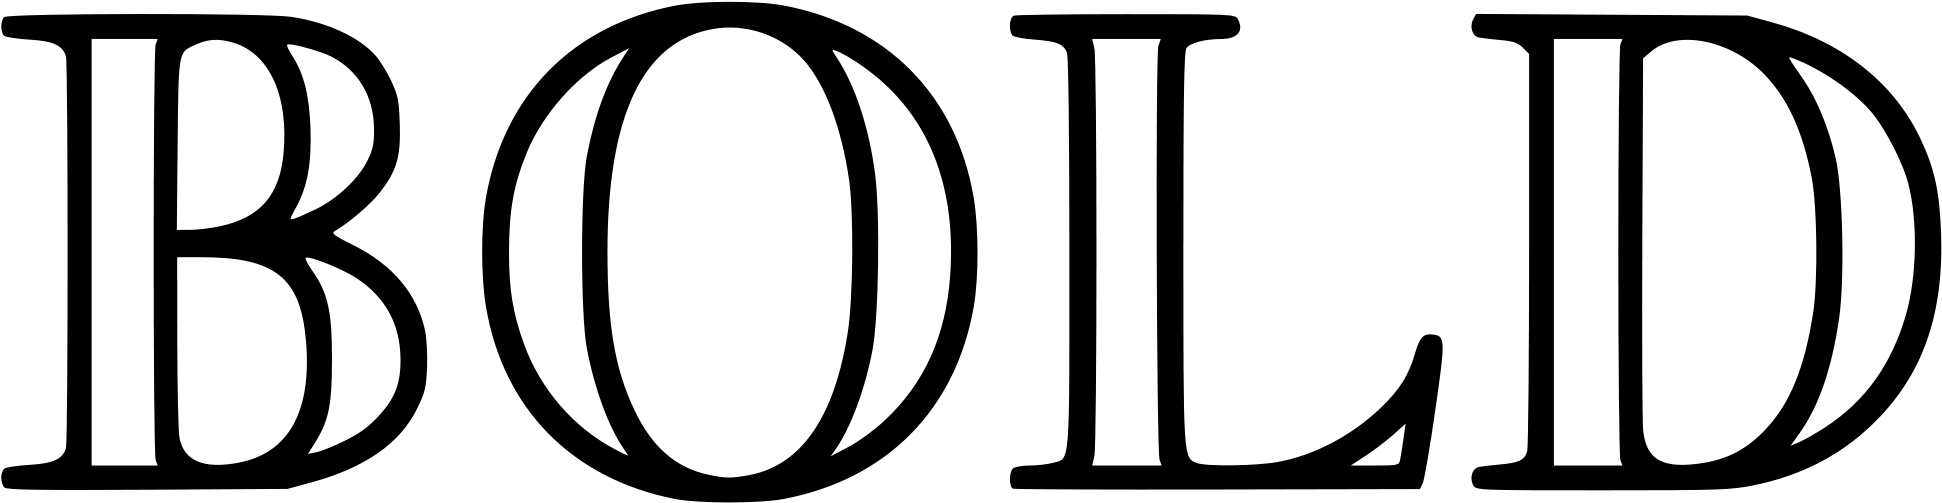 Open - Blackboard Bold (2000x558)